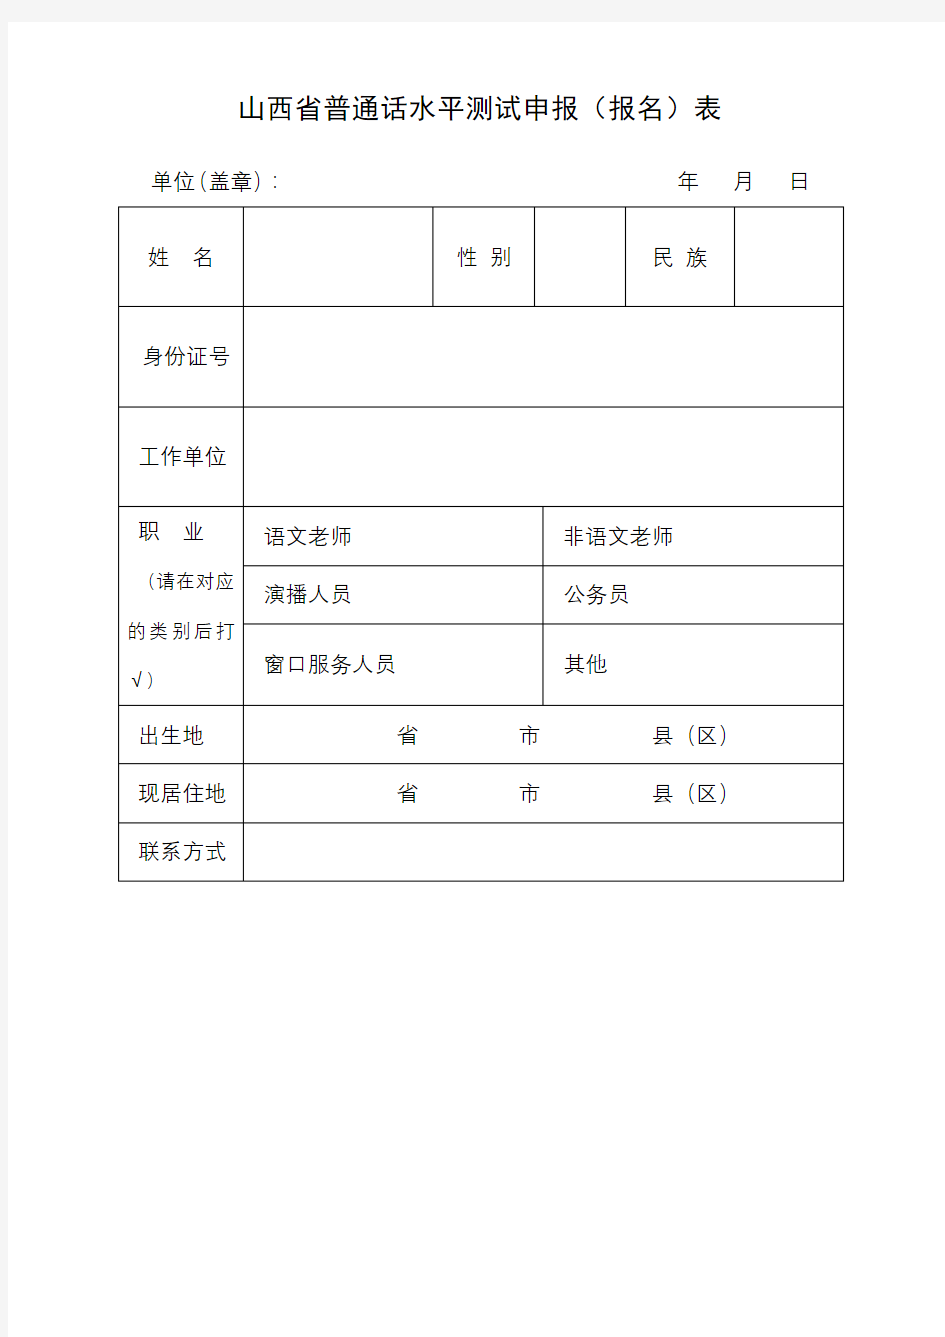 山西省普通话水平测试申报(报名)表【模板】